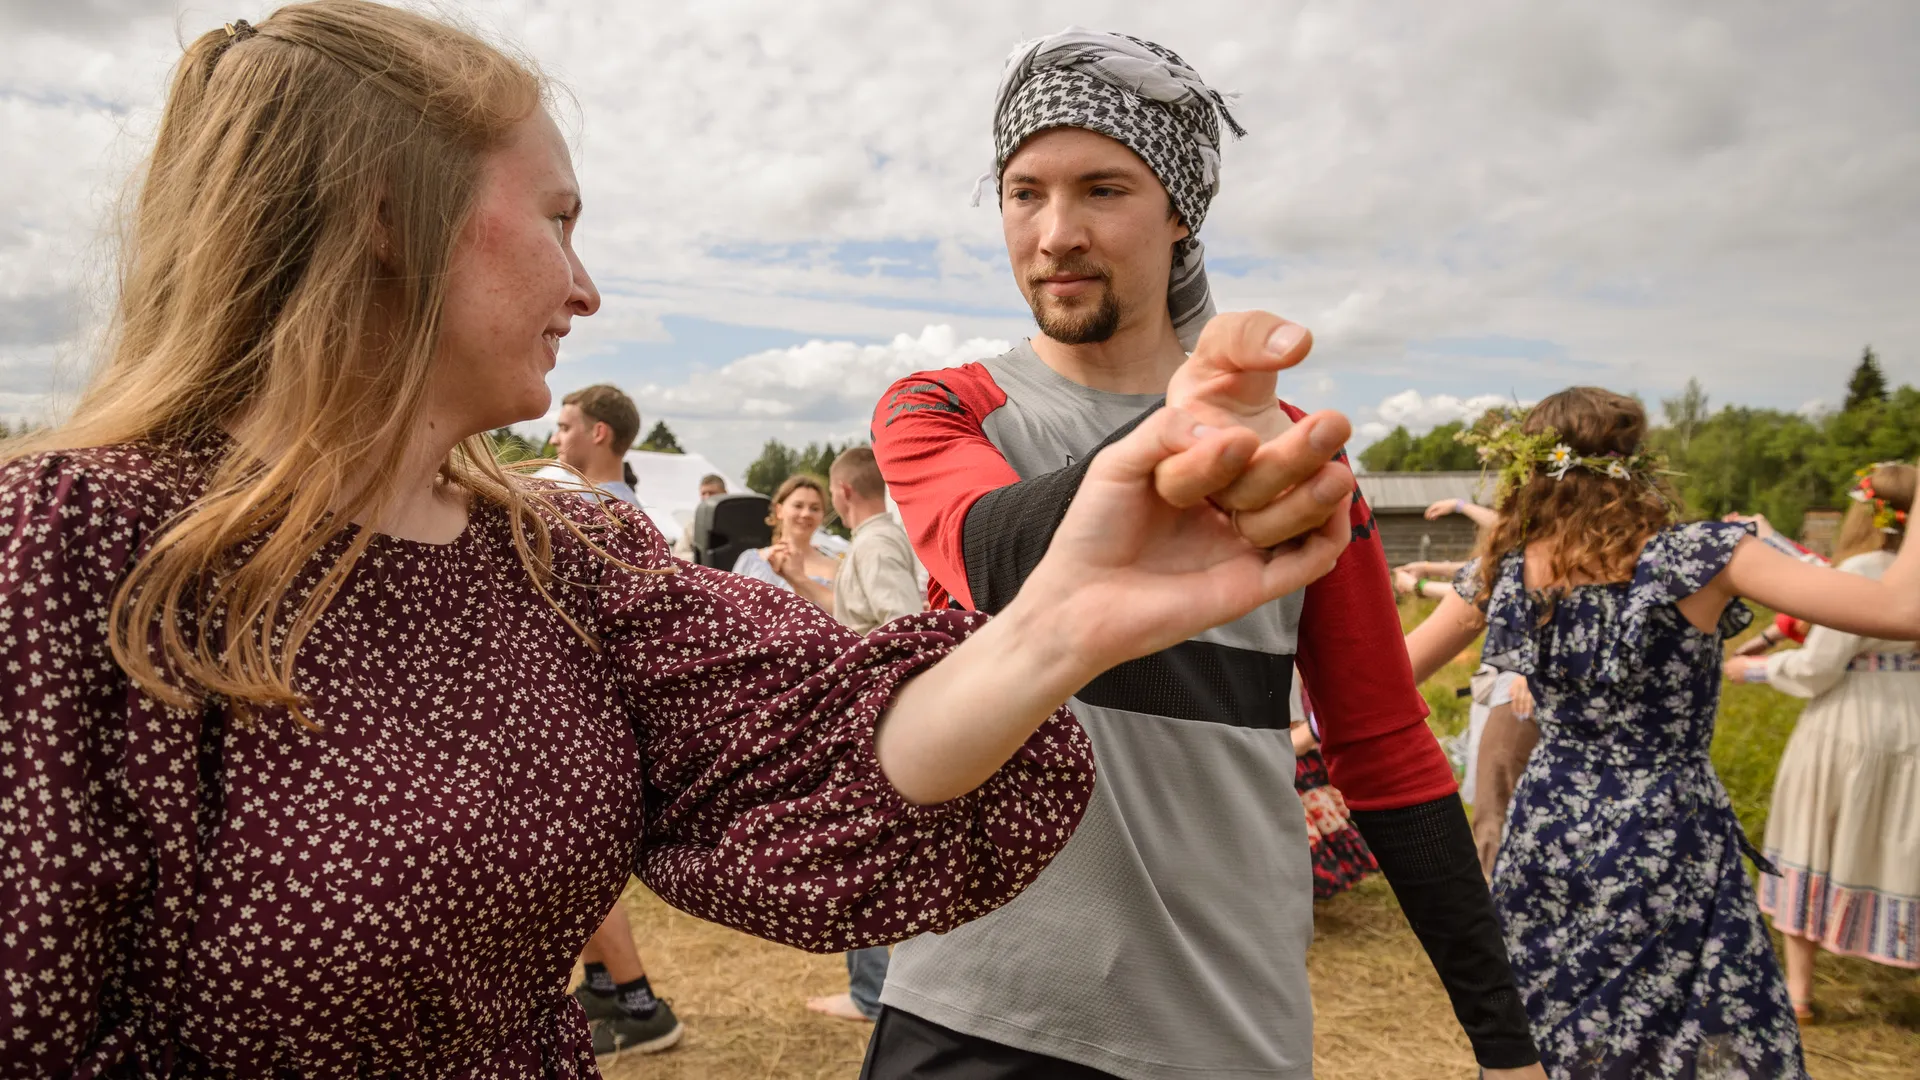 На майских праздниках жители Москвы могут научиться бесплатно танцевать